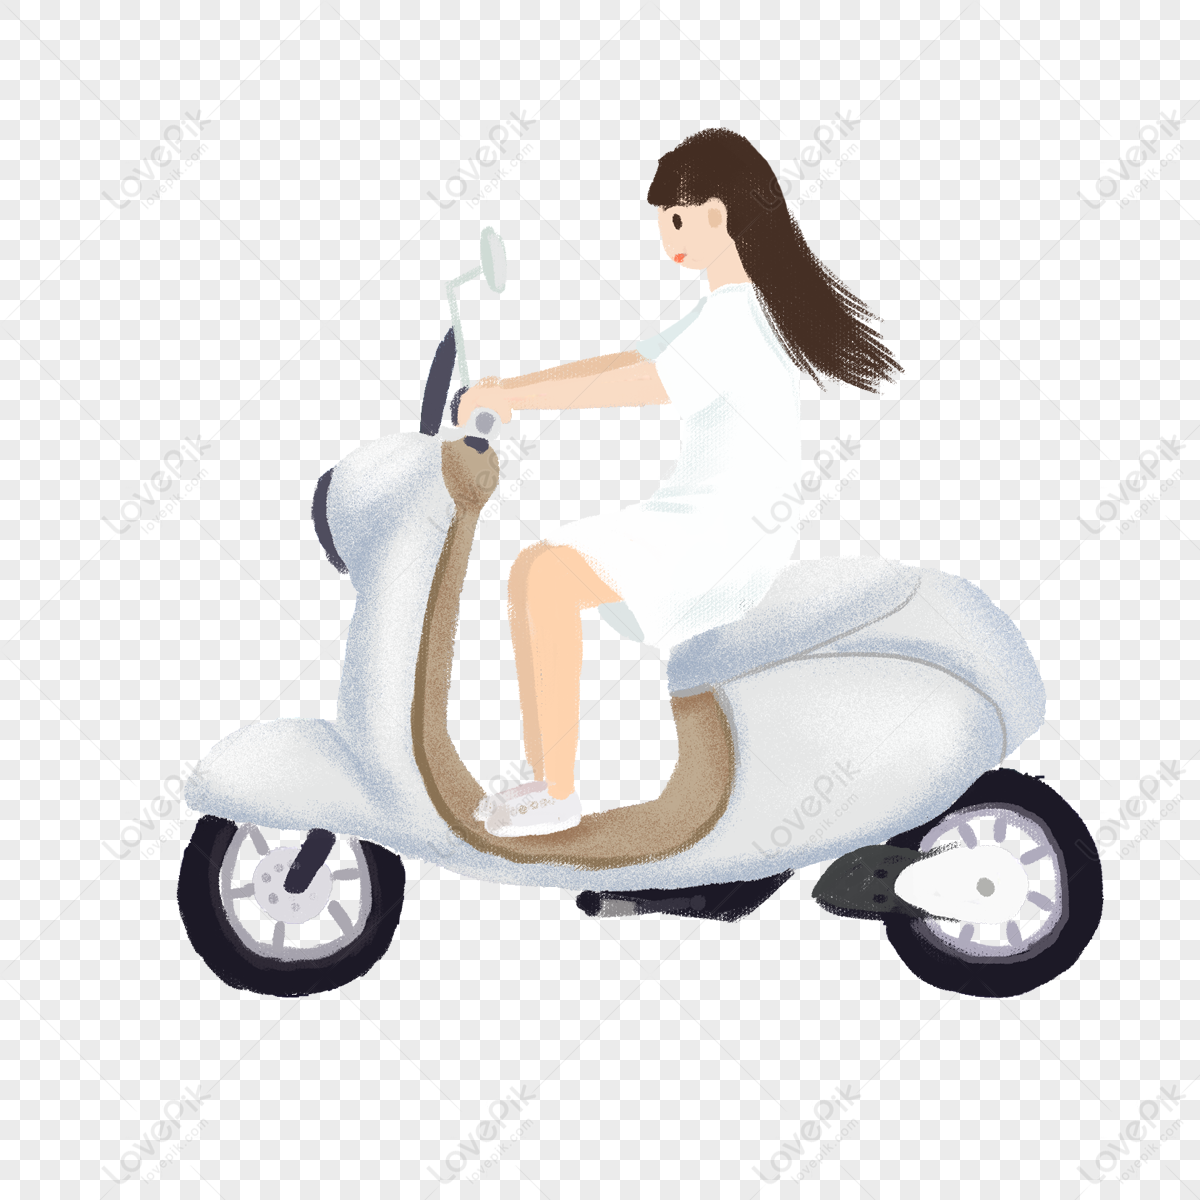 Bức ảnh về cô gái cưỡi xe máy sẽ khiến cho trái tim của bạn nóng bừng lên trước sự ngọt ngào và hấp dẫn của hình ảnh này. Hãy chờ đợi đến khi xem nó và cảm nhận nhé!